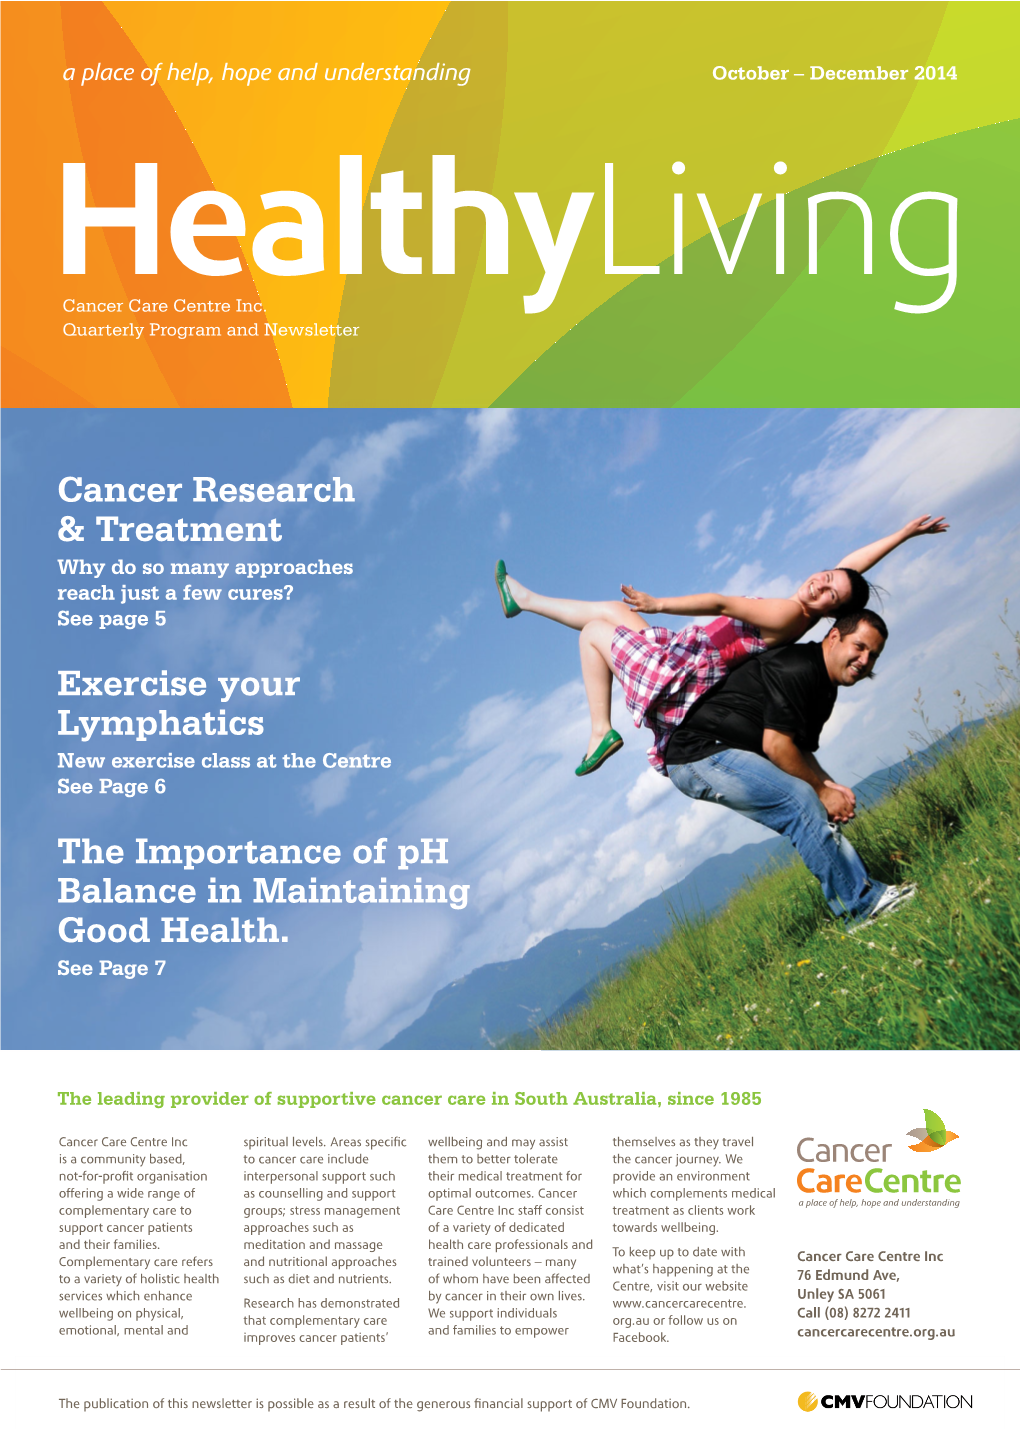 Healthy Living Oct Dec 2014 02.Indd